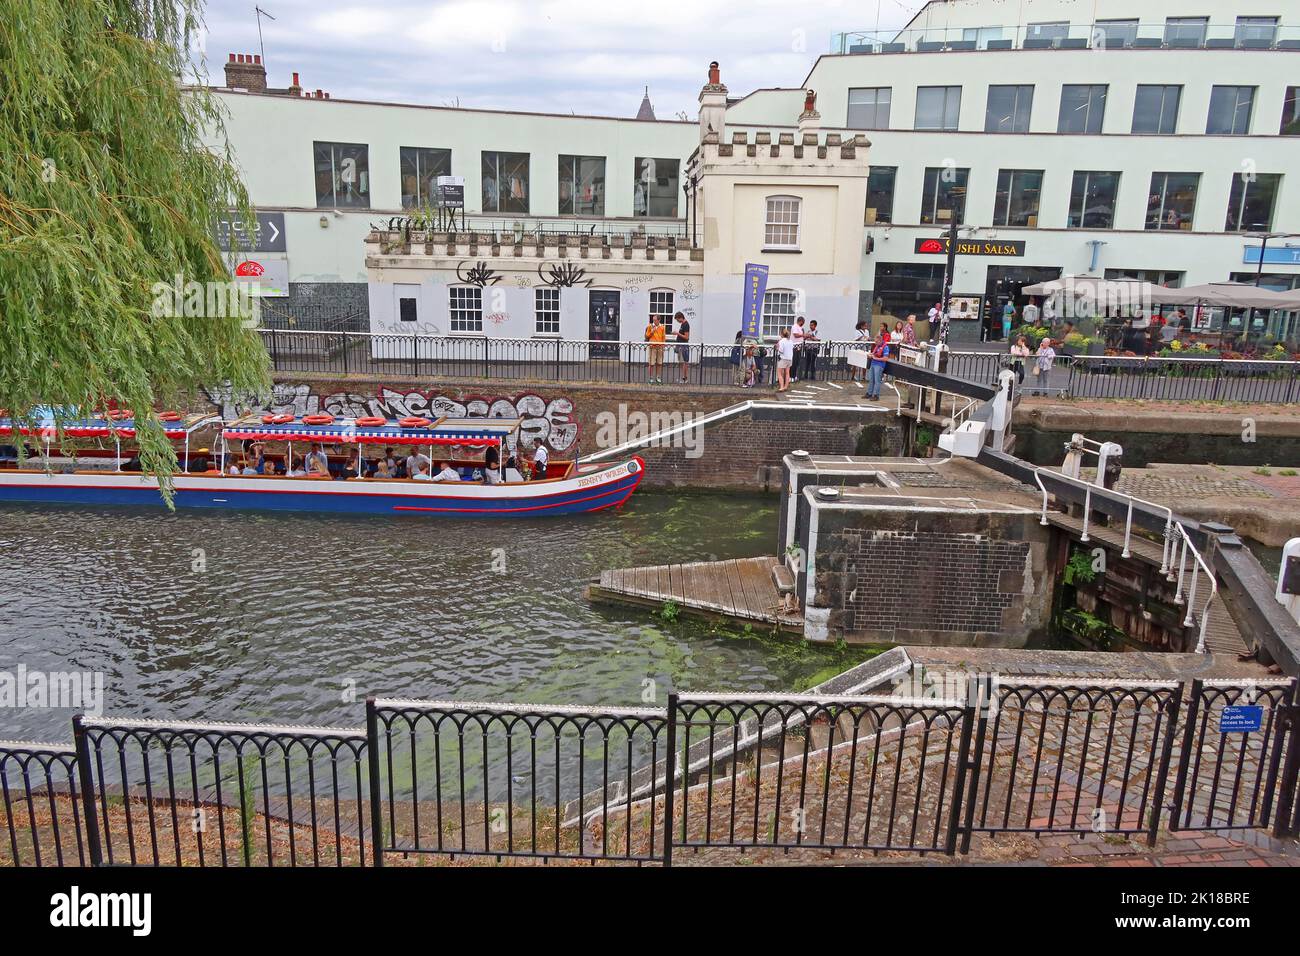 Il Jenny Wren, barca di giorno del canale, a Camden Lock Place, Londra del nord, Inghilterra, Regno Unito, NW1 8AF Foto Stock